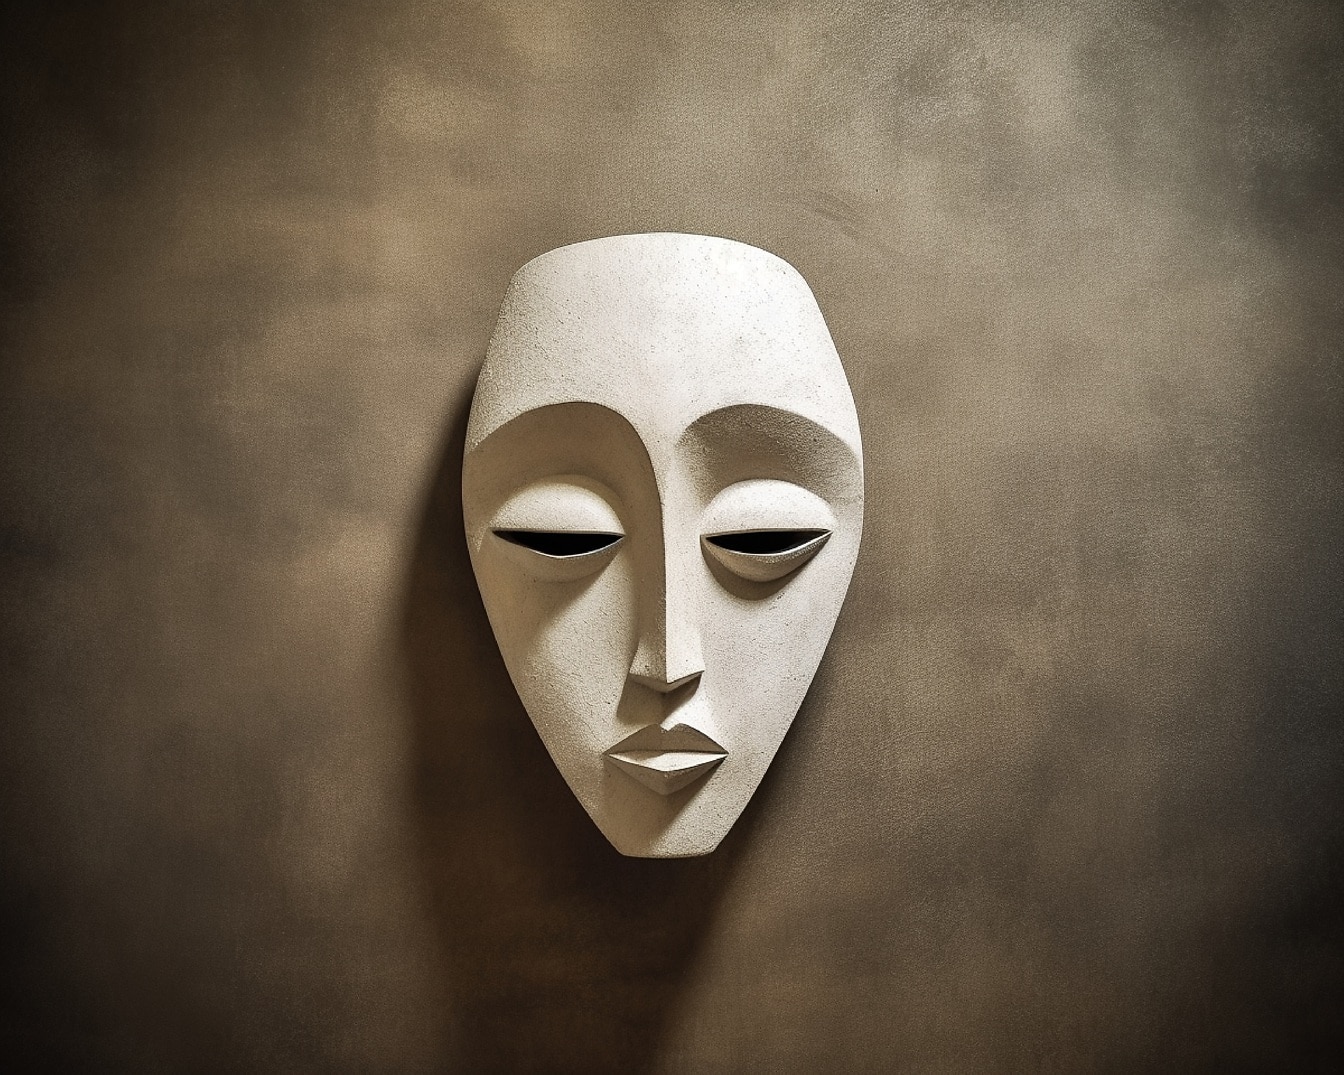 Arte branca da máscara facial fina na parede suja